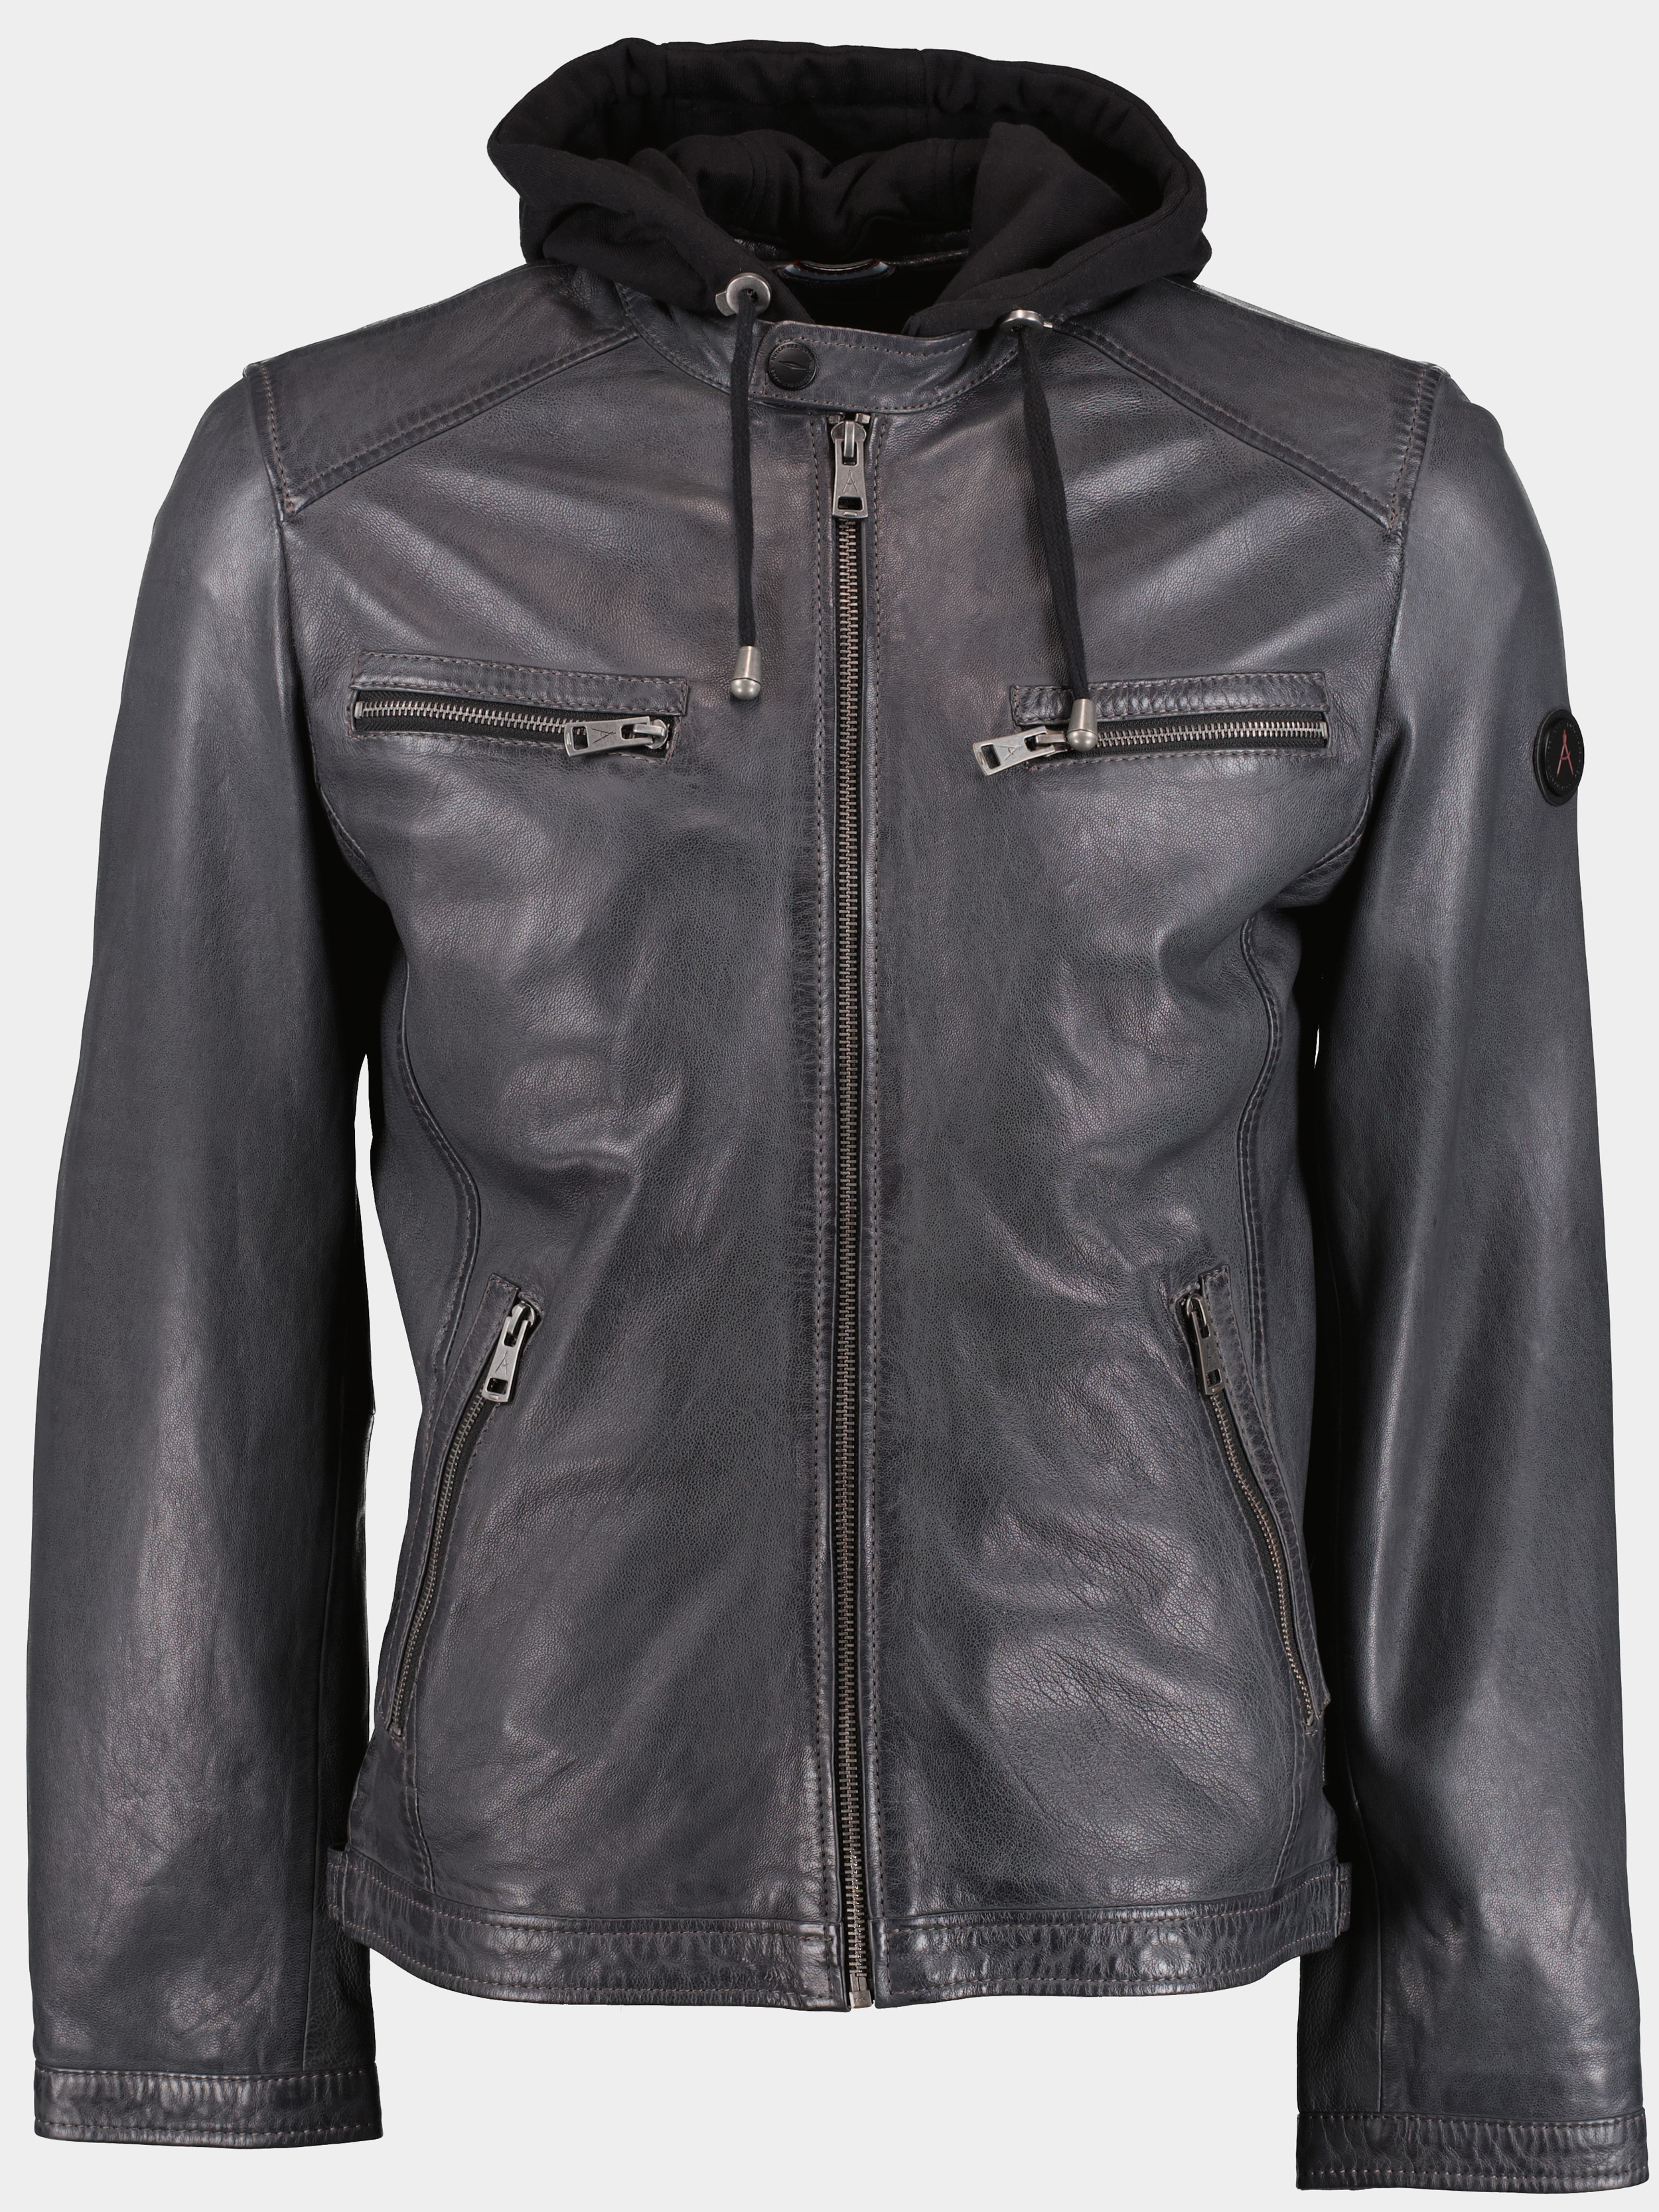 DNR Lederen jack Grijs Leather Jacket 52300/980